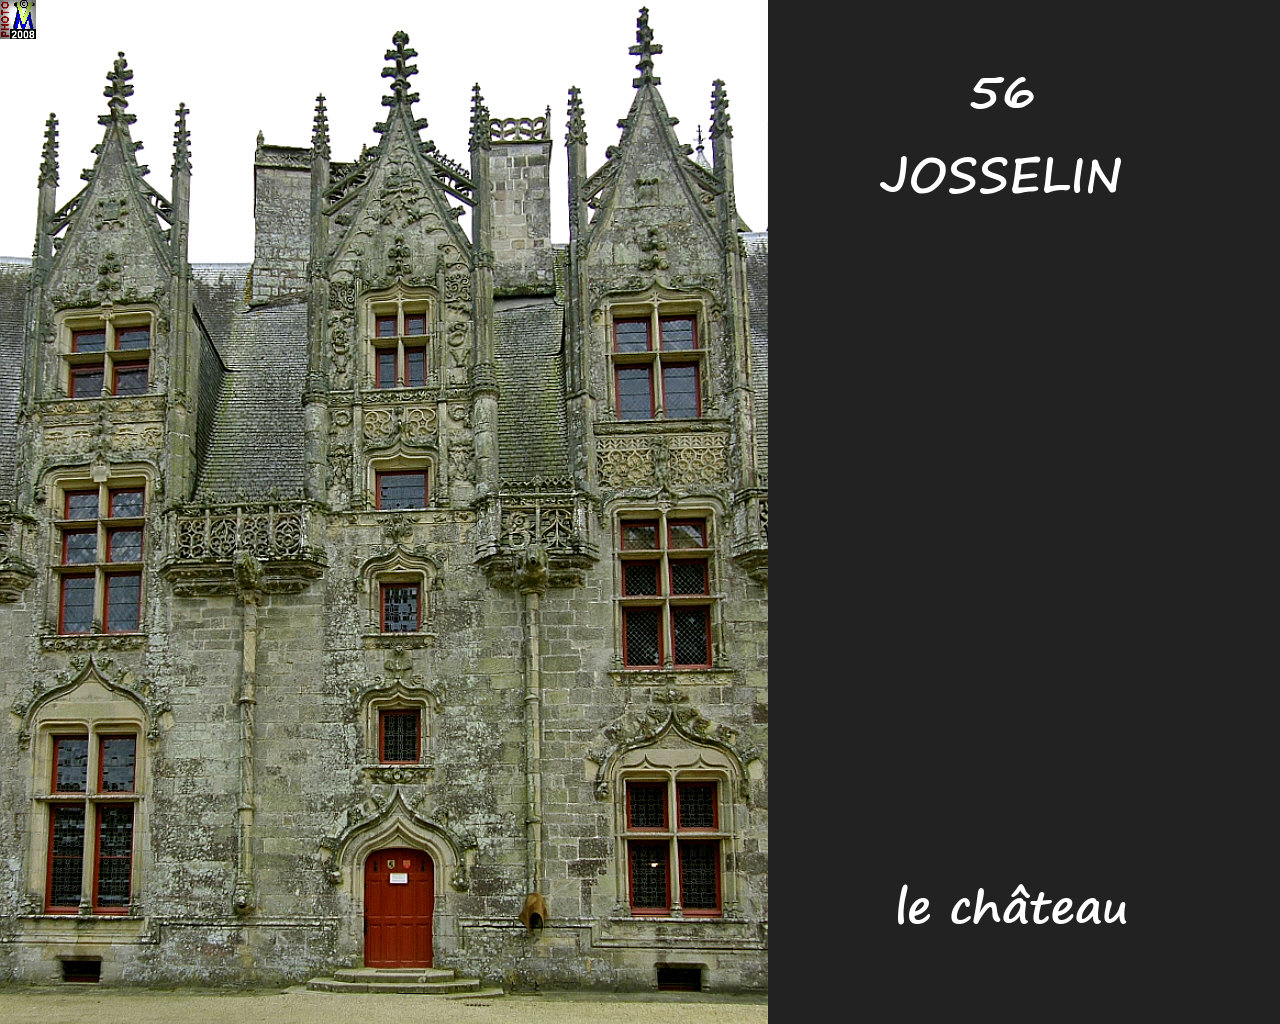 56JOSSELIN_chateau_236.jpg